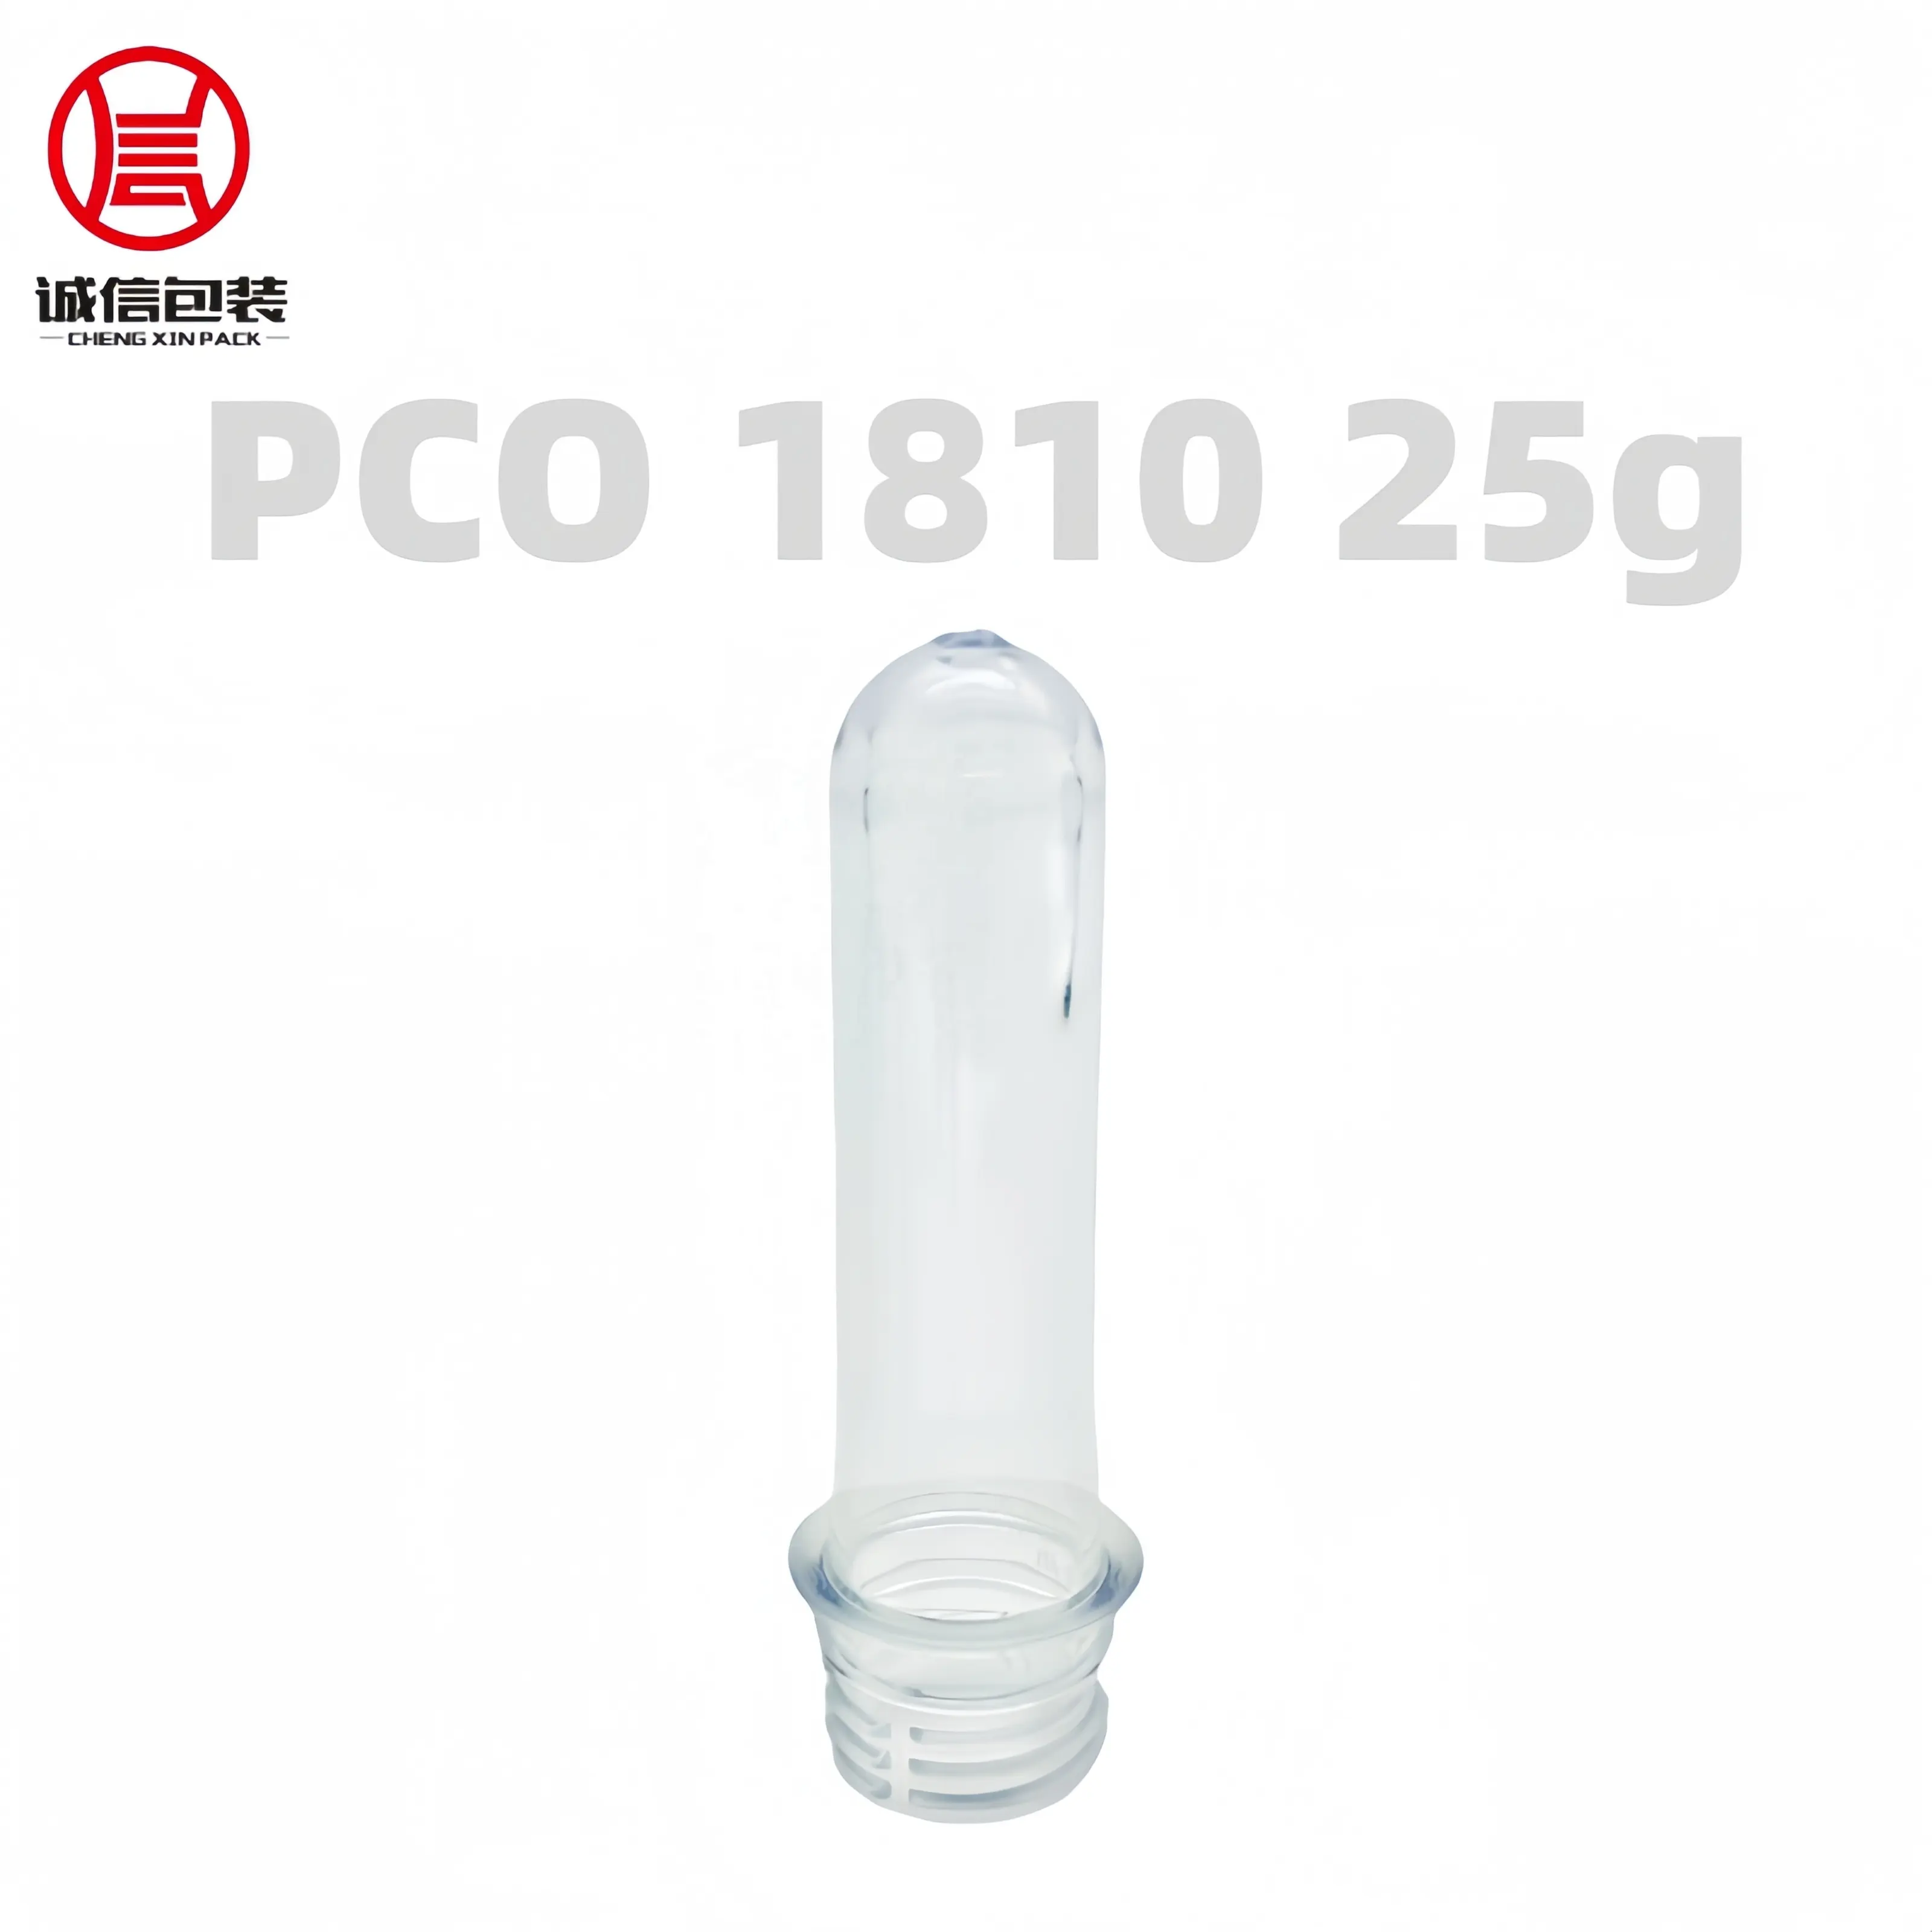 Pco 1810 25g Pco 28mm Neck Pet Water Bottle Preform Plastic Pet Factori Preform Pet Buy Preform Manufacturers